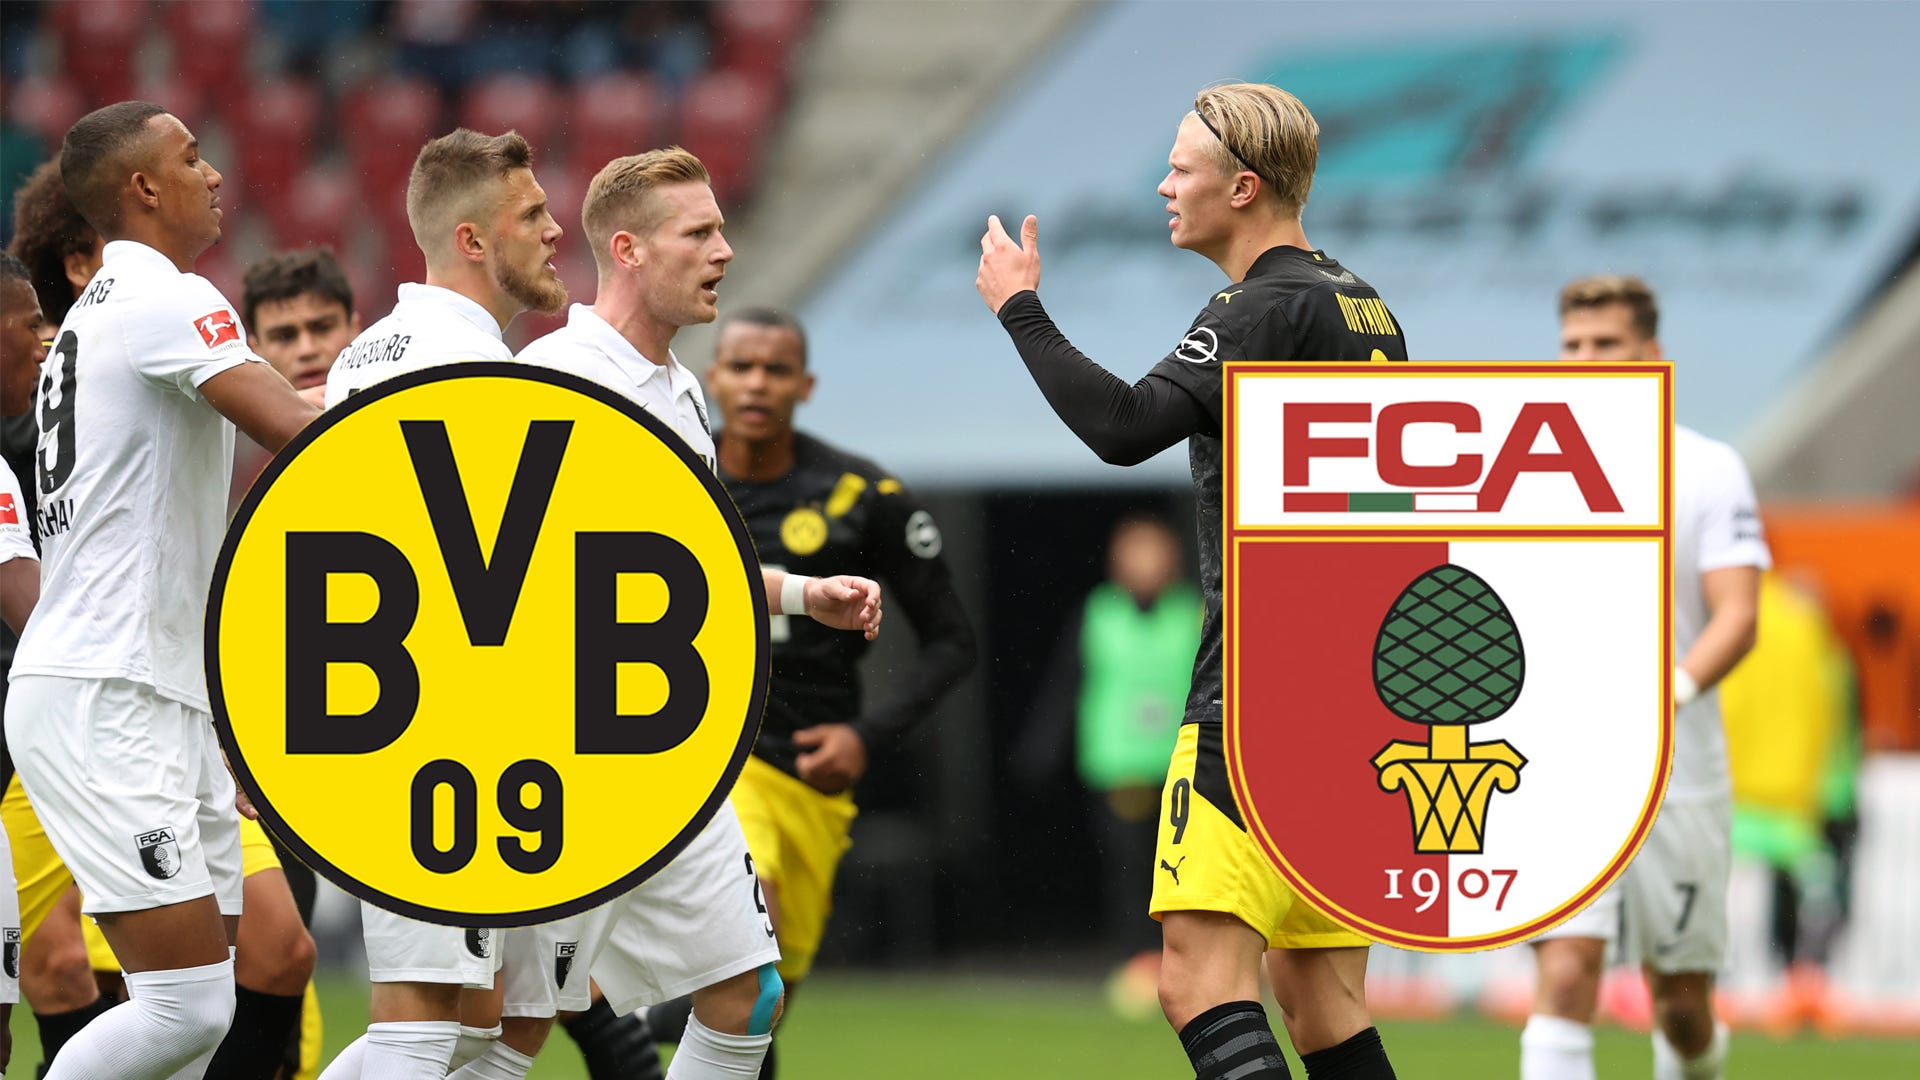 Wer zeigt / überträgt BVB (Borussia Dortmund) vs